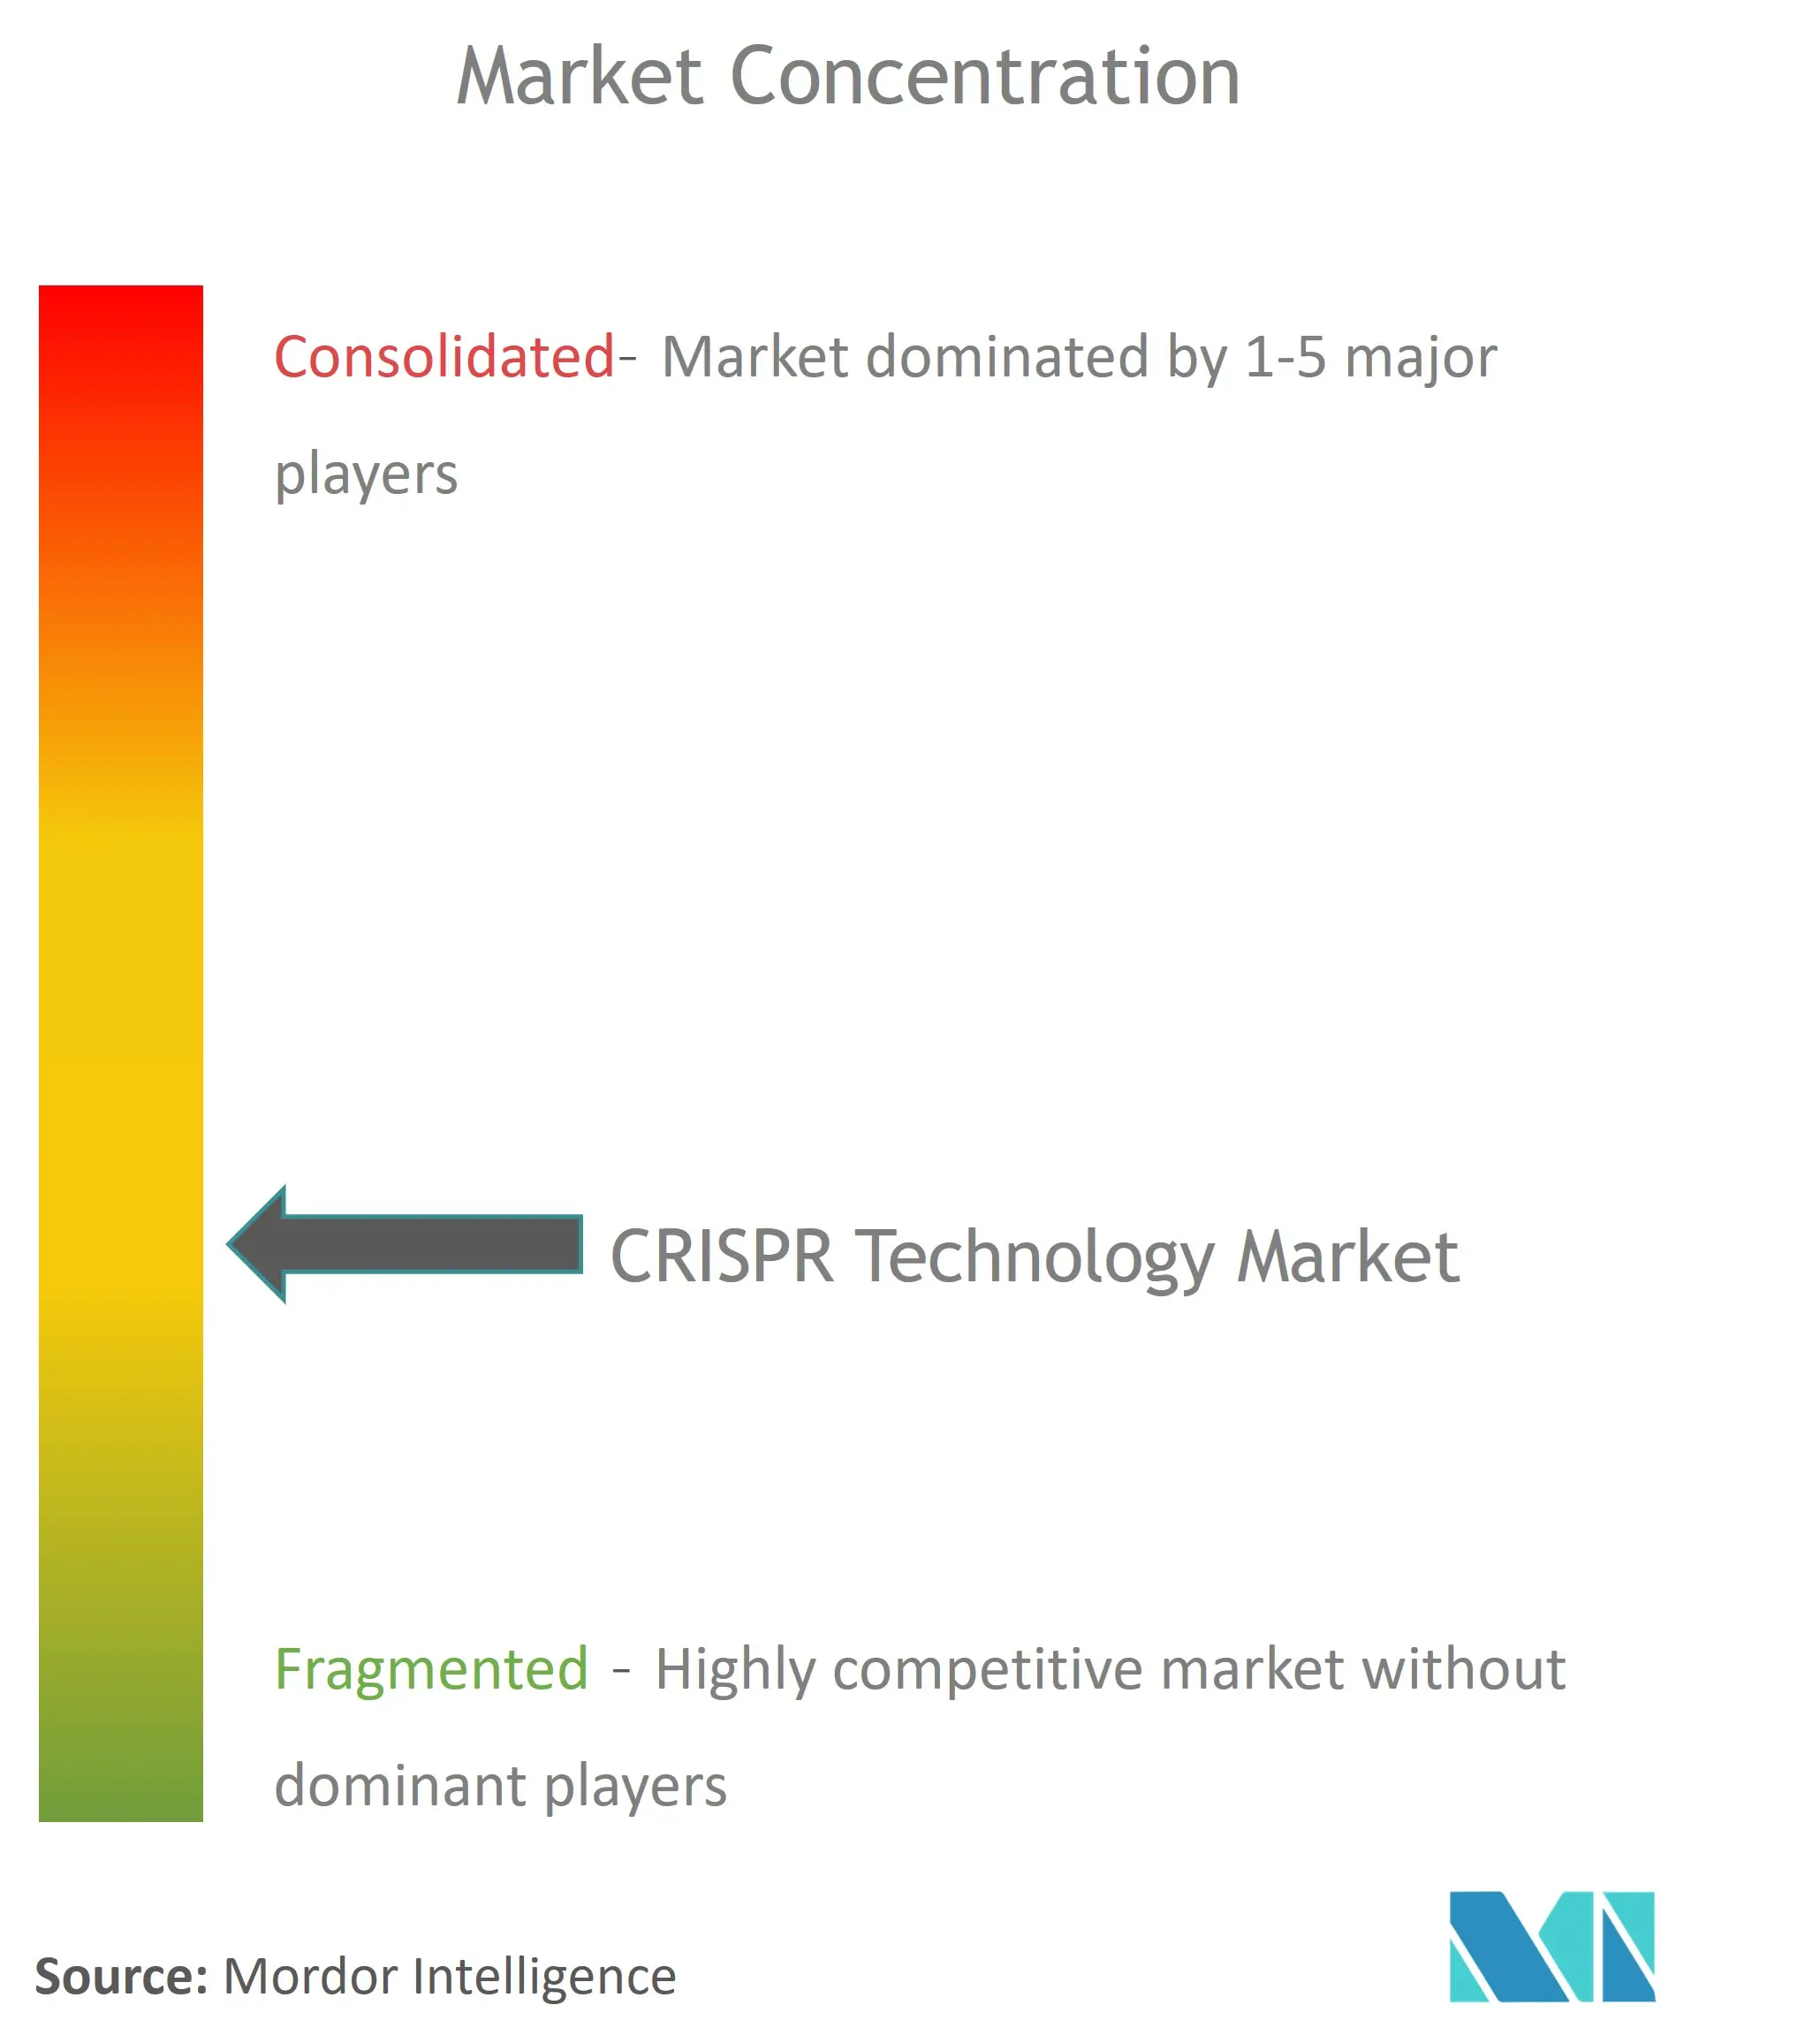 Concentración del mercado de tecnología CRISPR